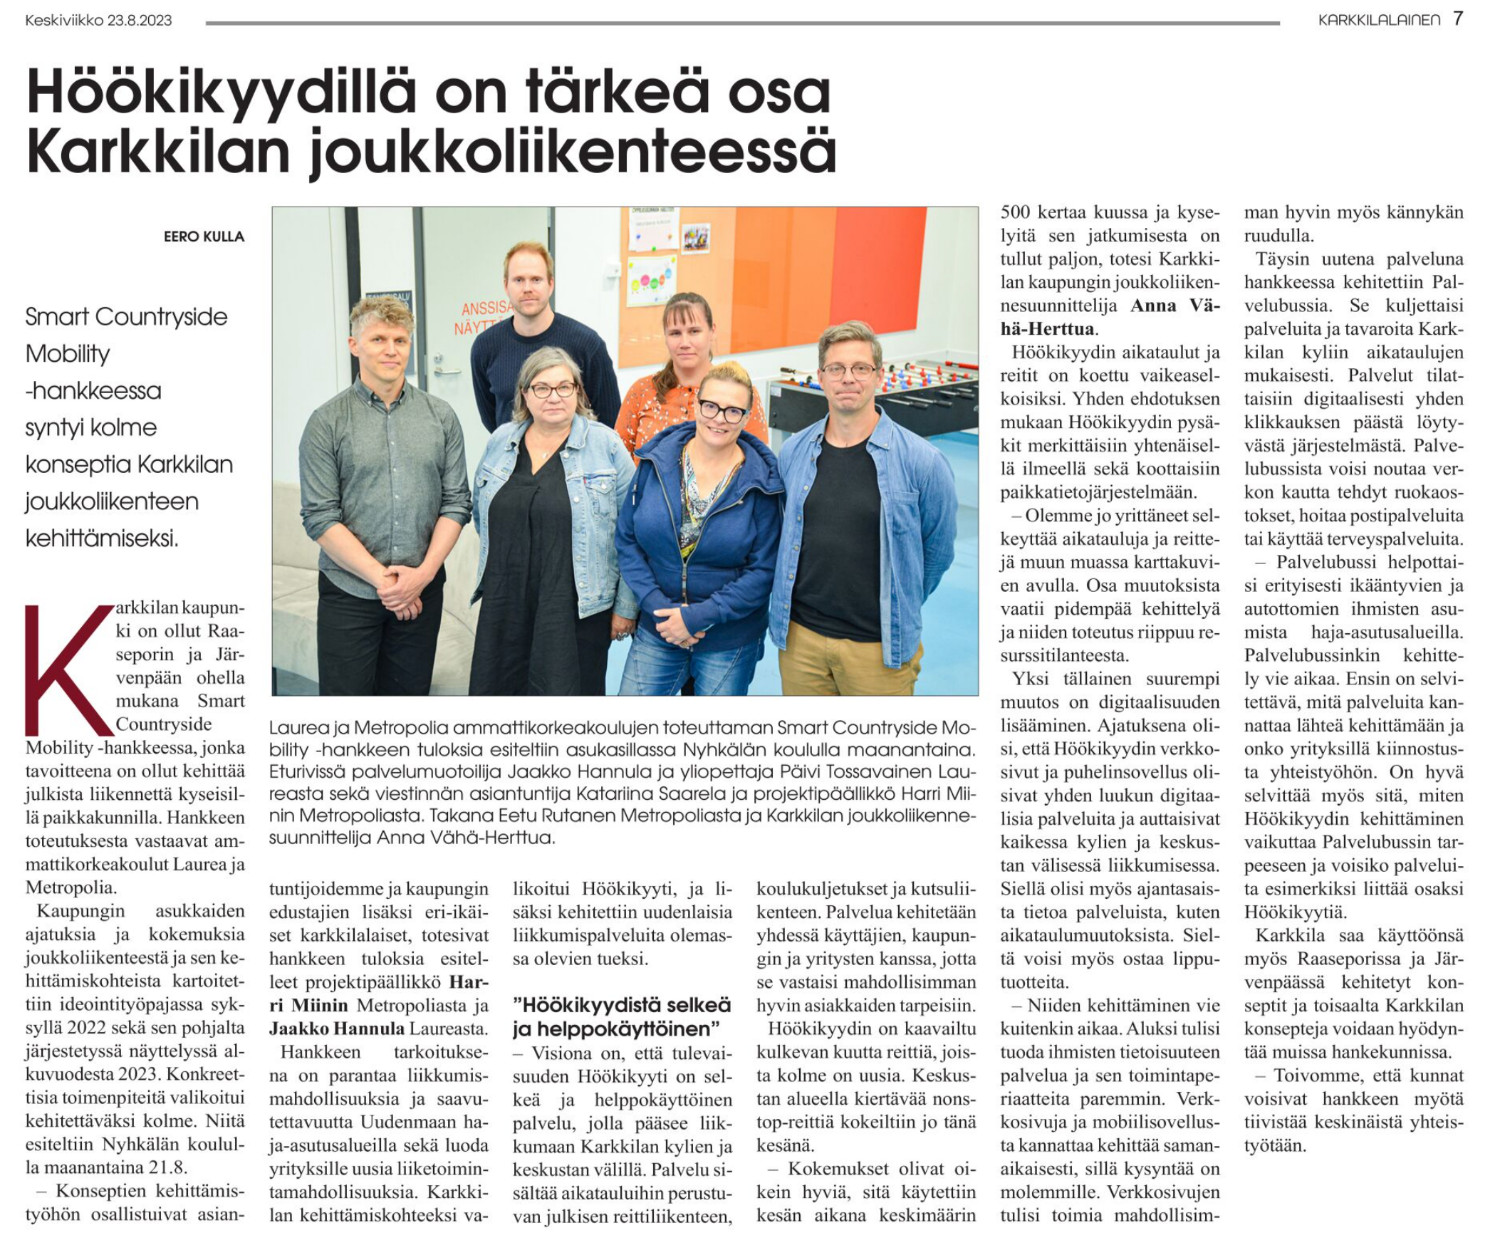 Kuva Karkkilalainen-lehdessä 23.8.2023 julkaisusta uutisesta Höökikyydillä on tärkeä osa Karkkilan joukkoliikenteessä. 